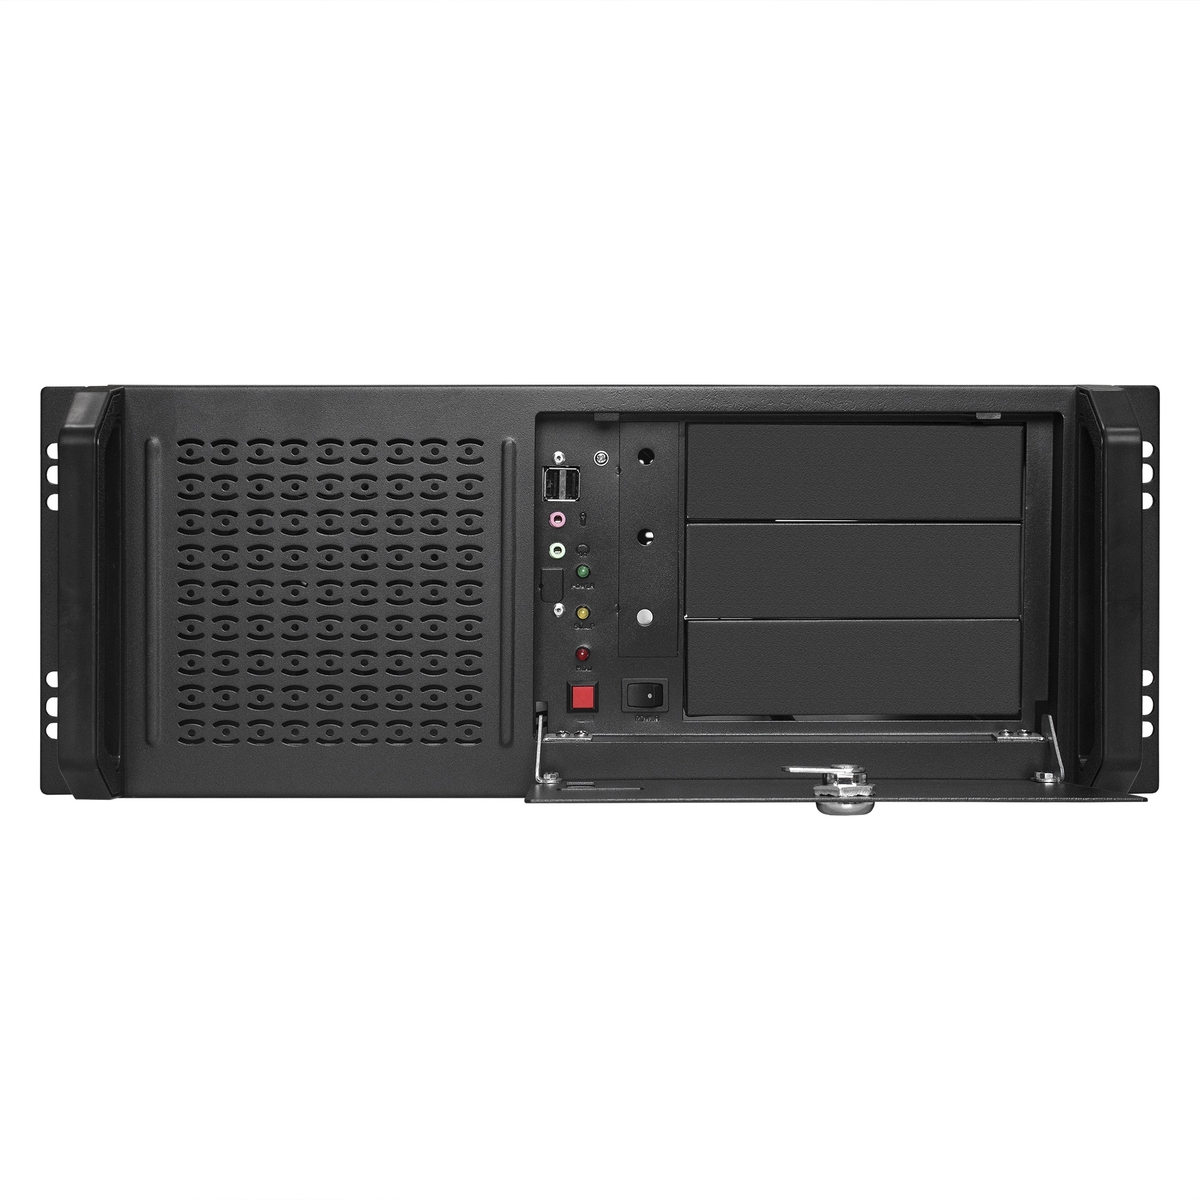 Server case ExeGate Pro 4U450-16/4U4019S/1000RADS